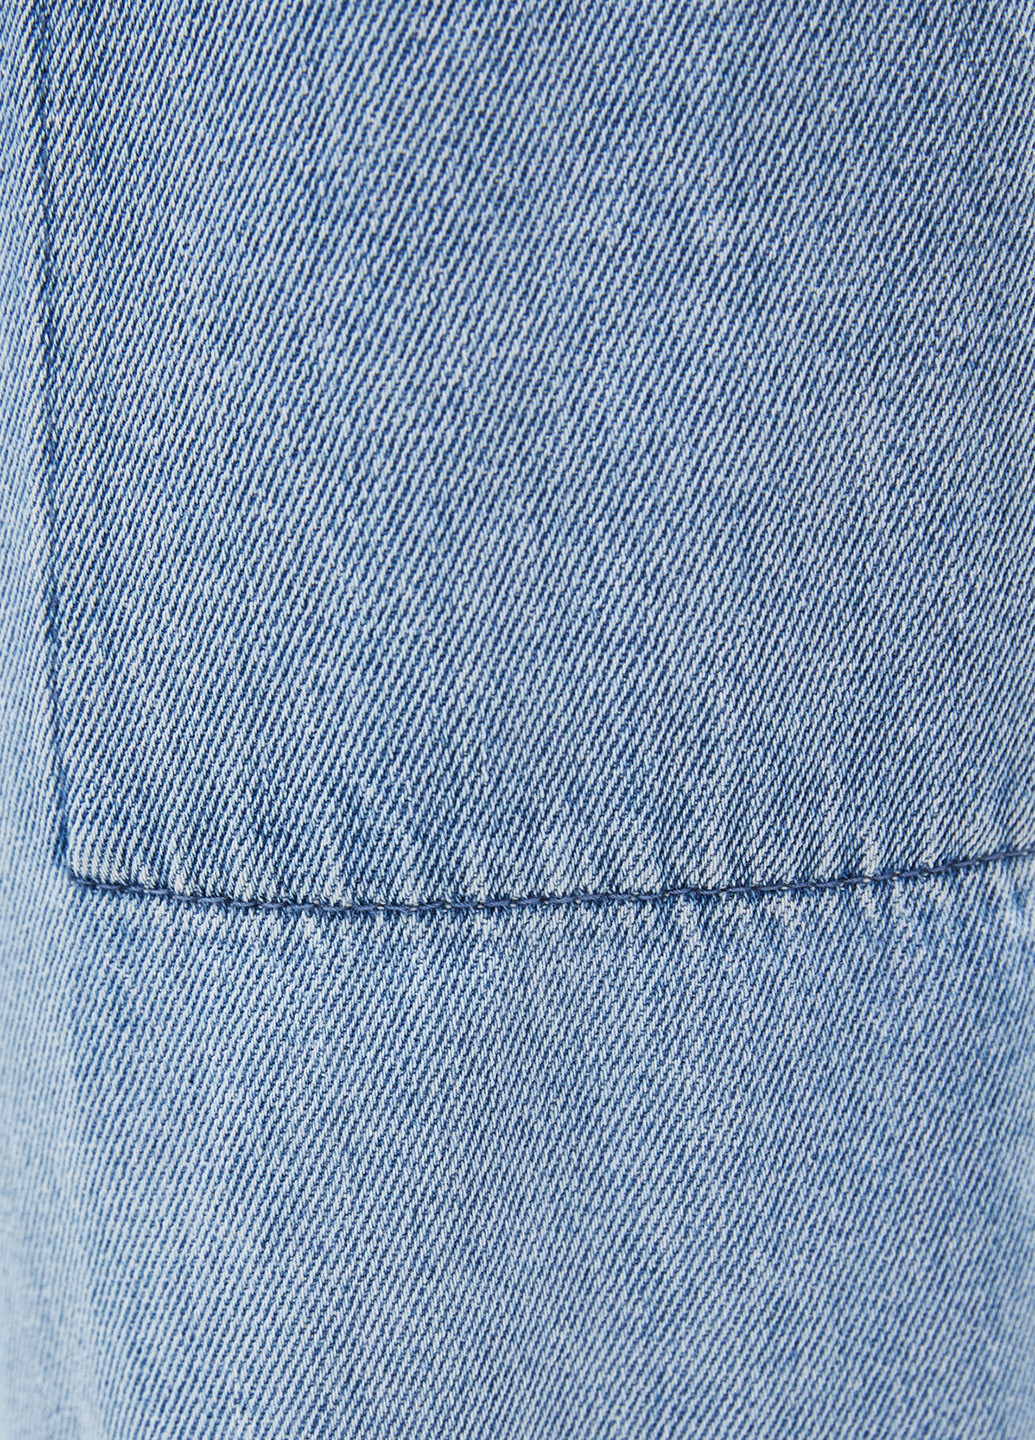 Голубые джинсовые демисезонные джоггеры, укороченные брюки Bershka